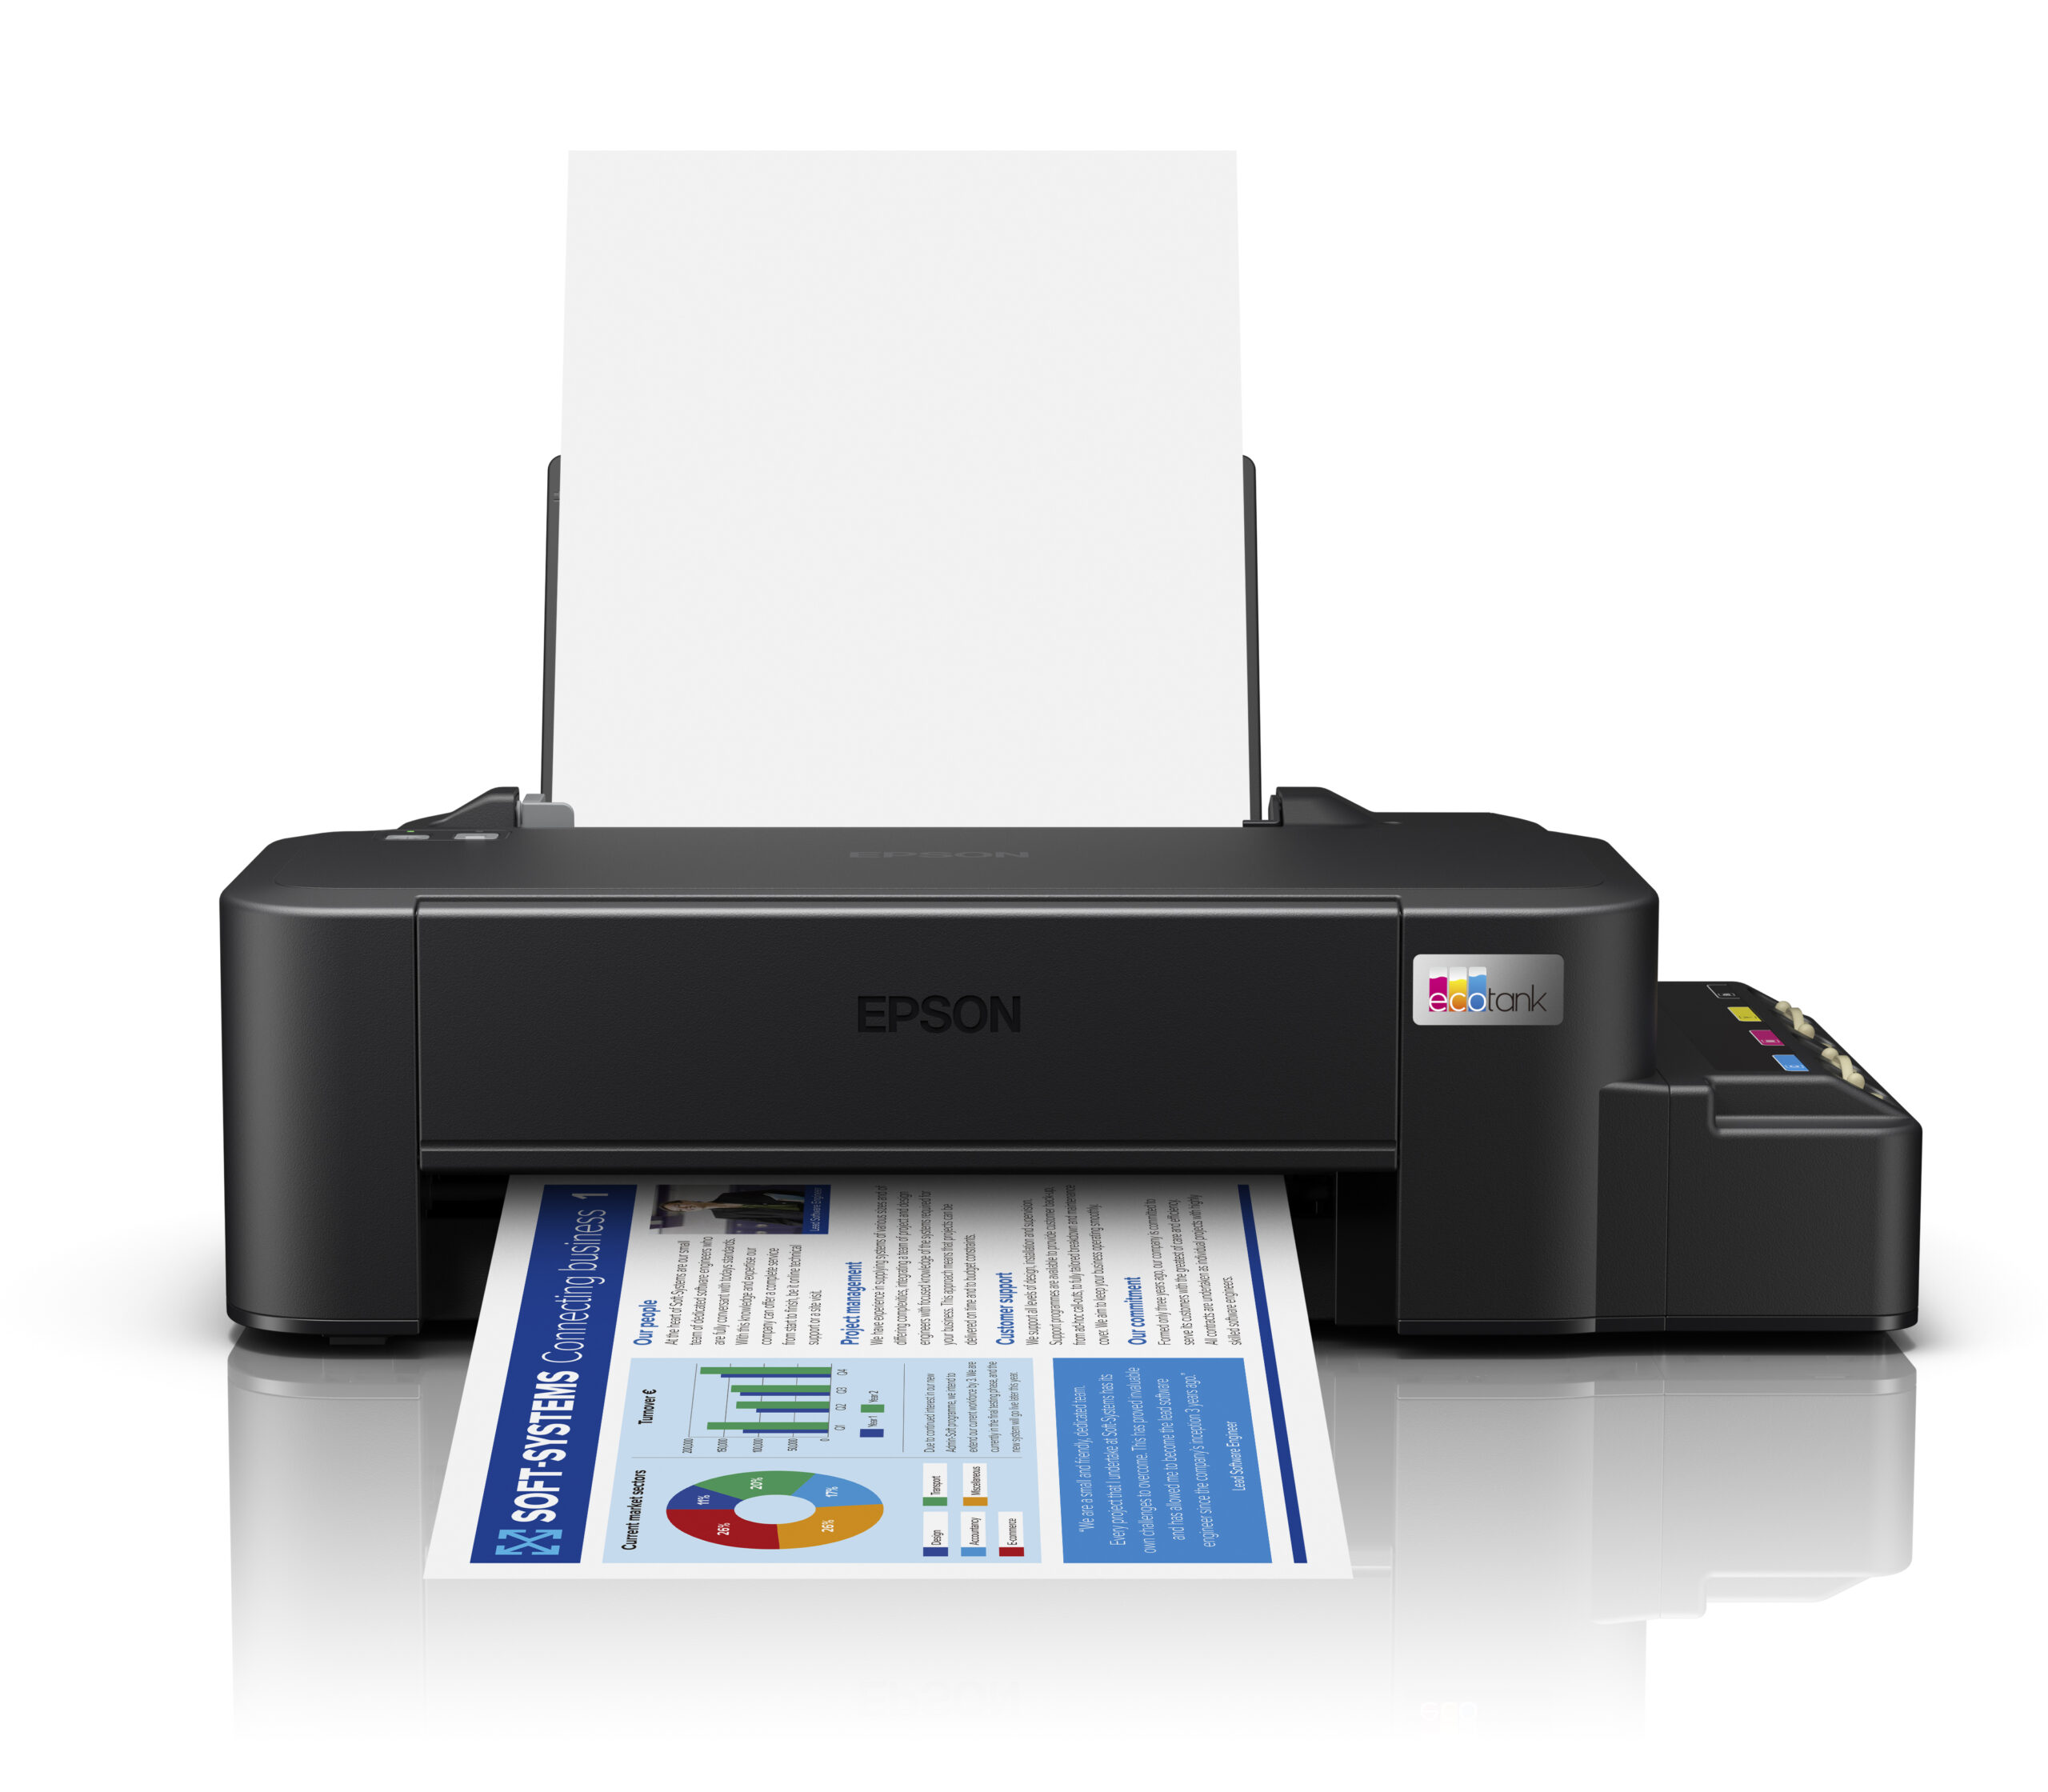 Epson Presentó La Nueva Generación De Impresoras Ecotank 6627